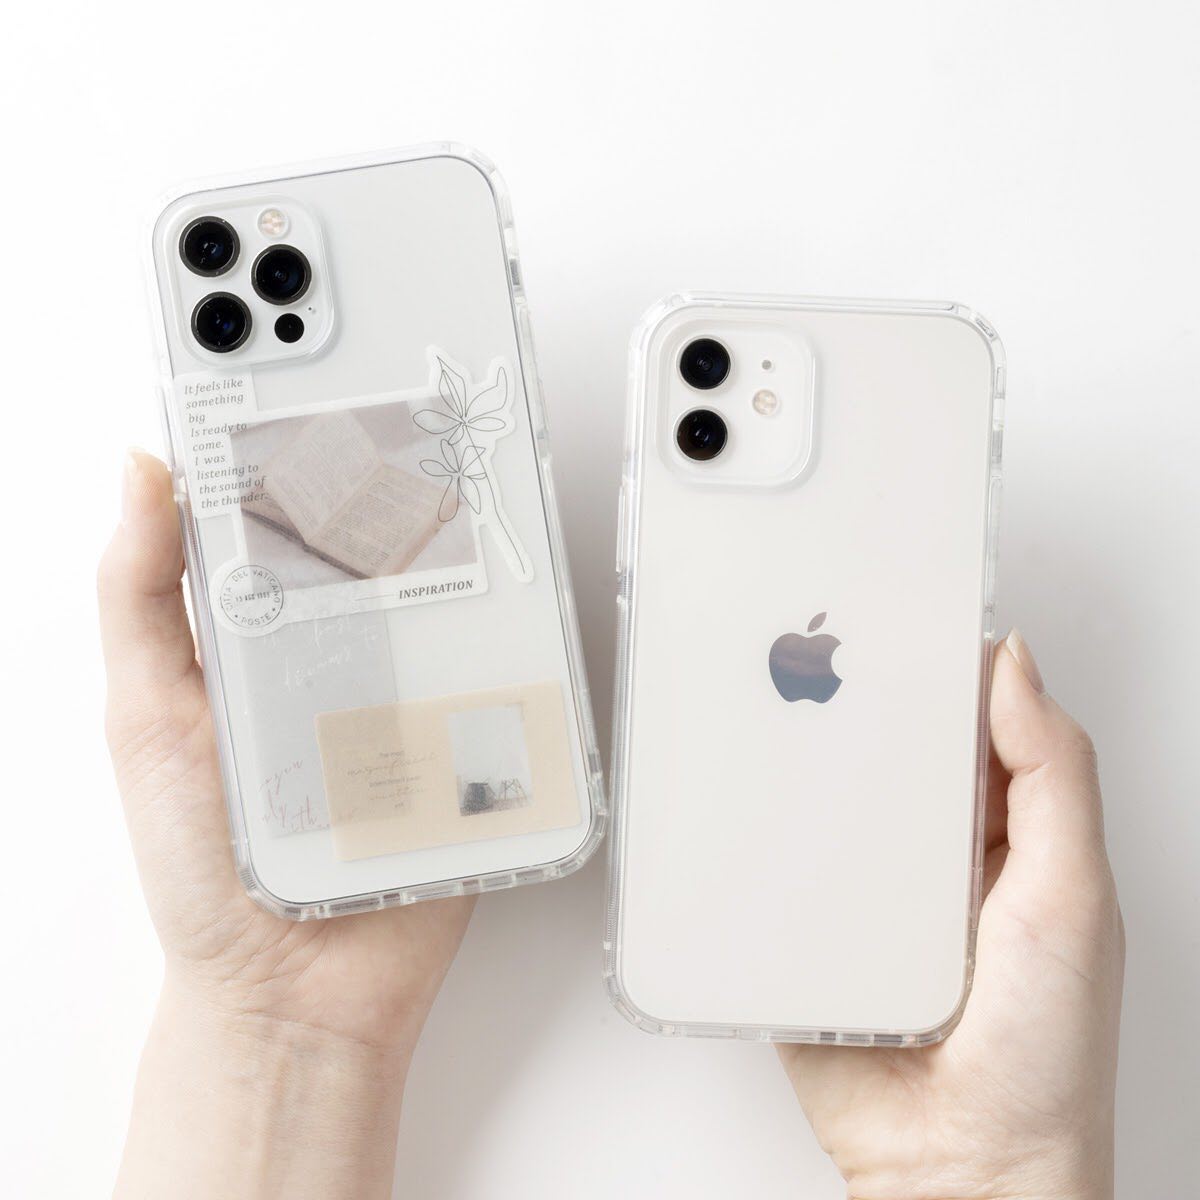 iPhoneケース 韓国っぽい 人気 トレンド おしゃれ かわいい 透明 クリア 抗菌